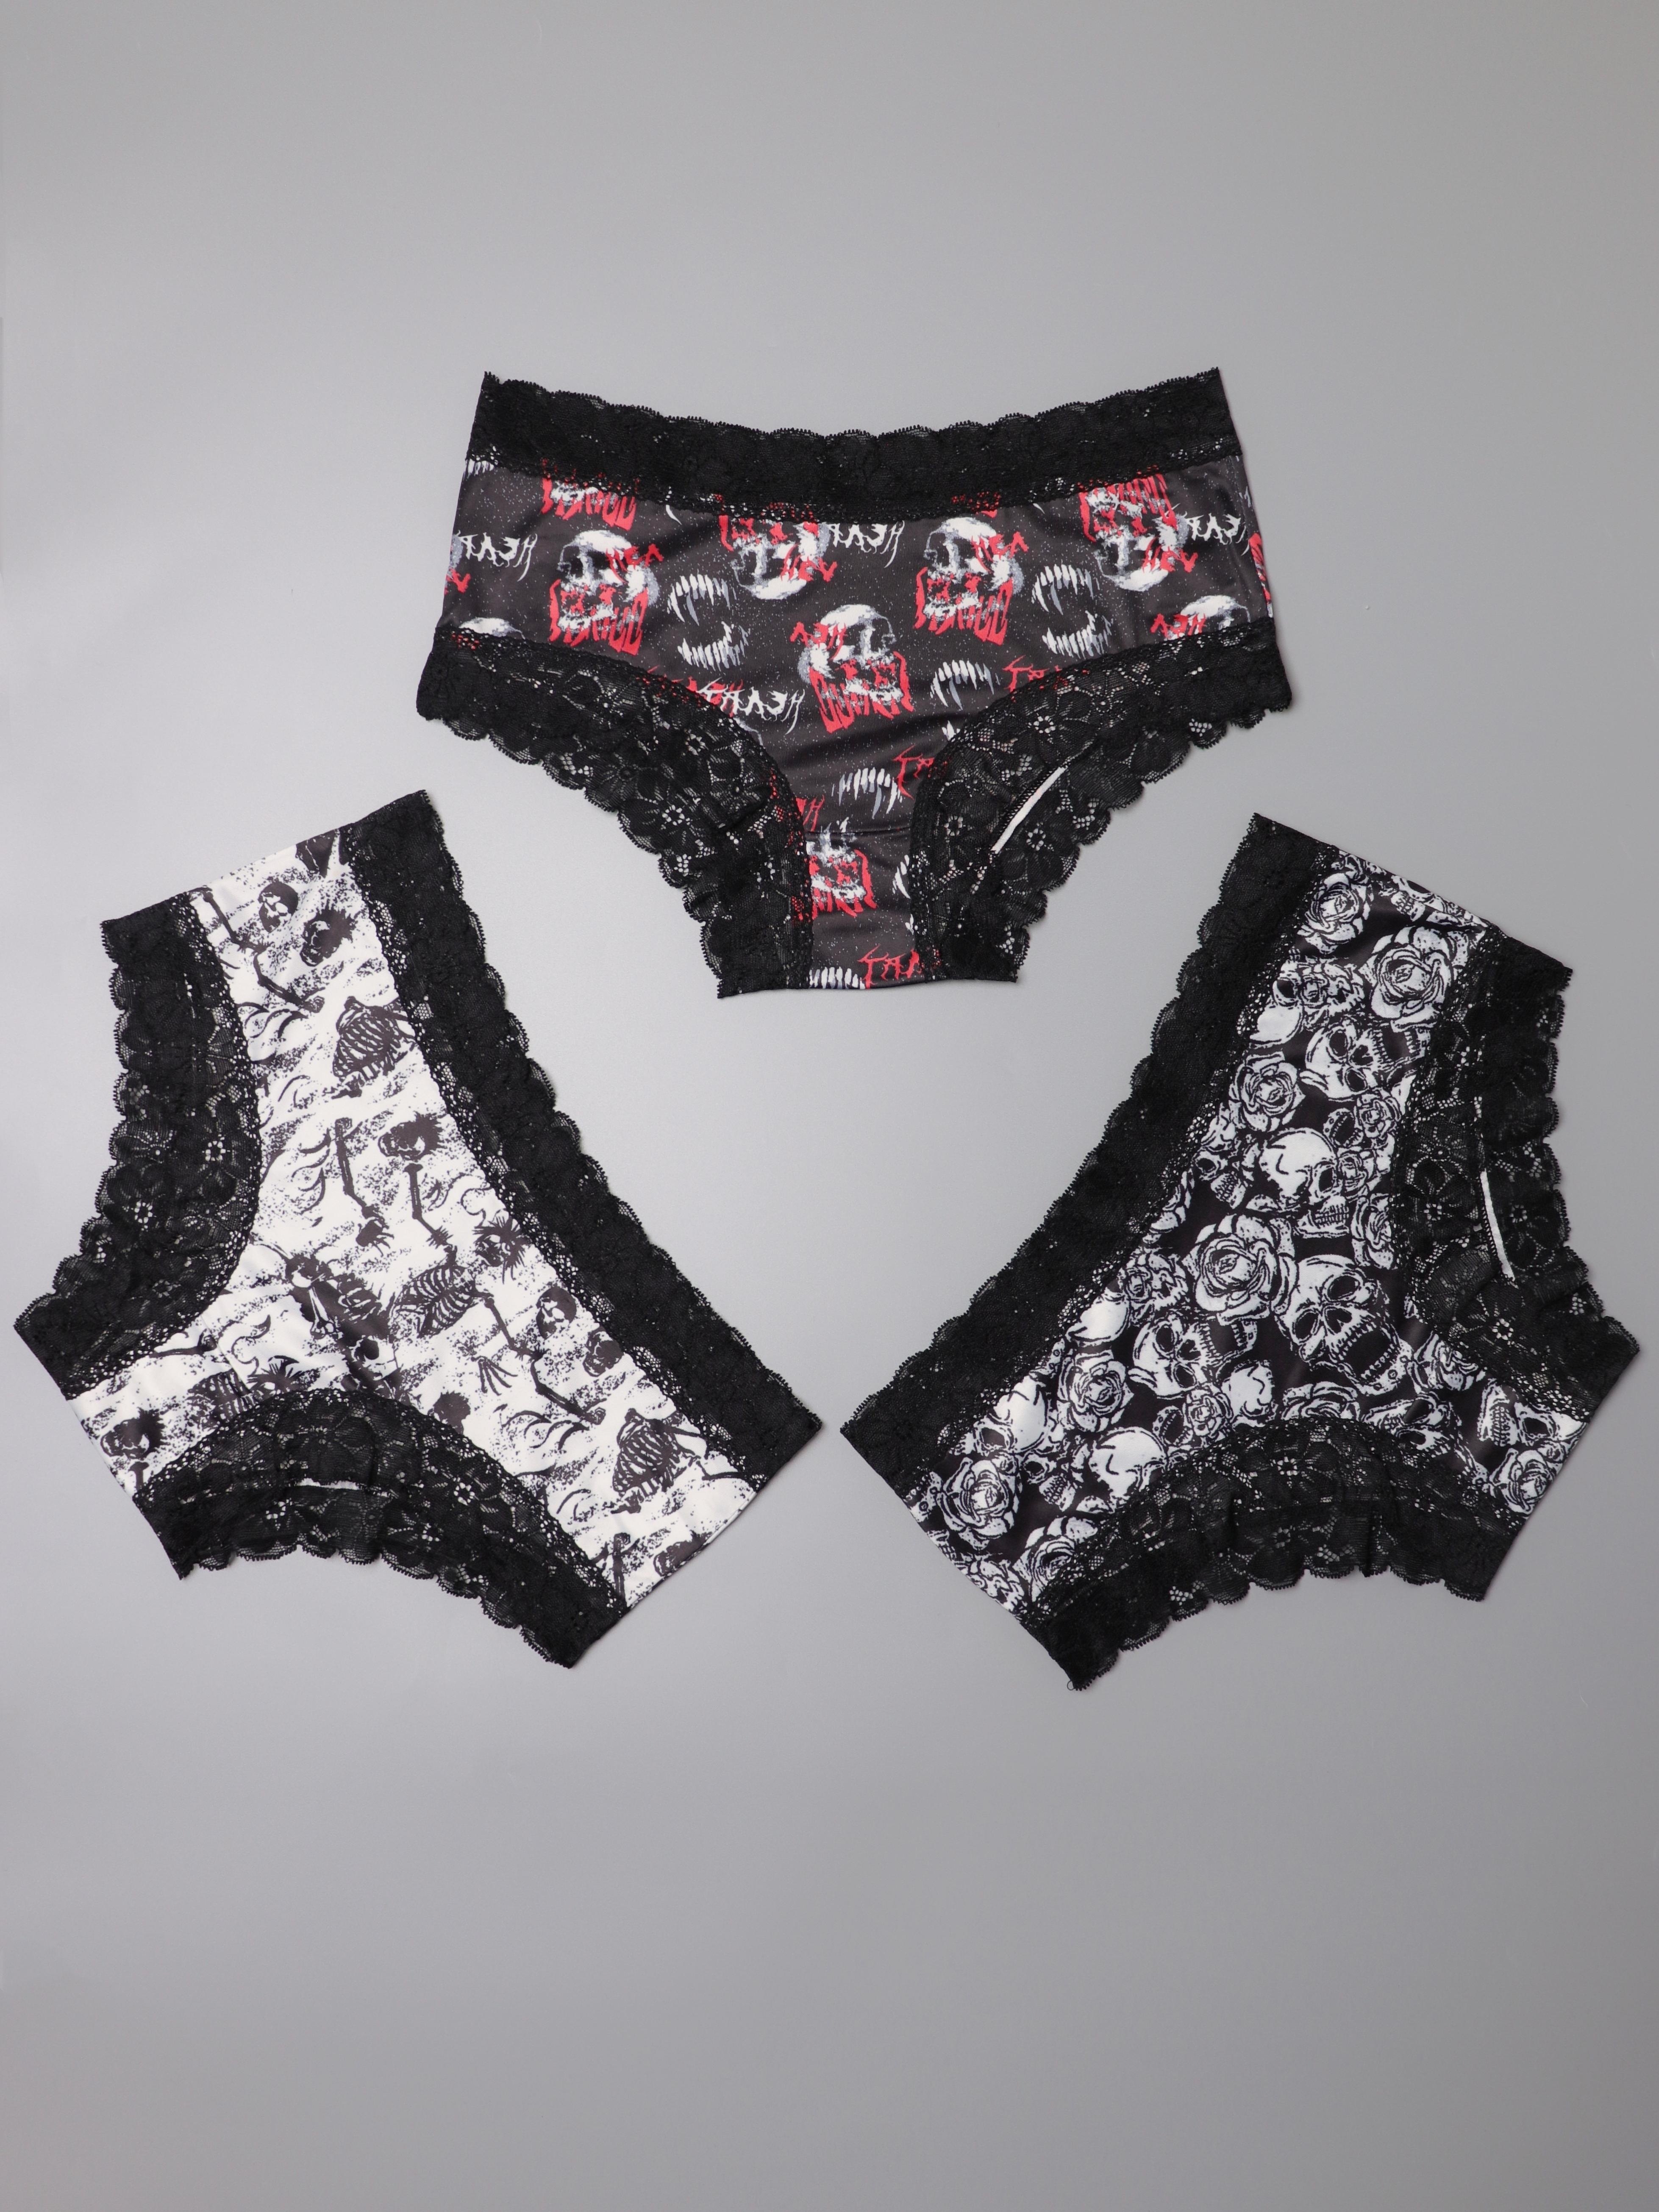 SMALL - 3XL : Emo Undies! Set of 3 goth halloween mesh black white hot barb  wire skeleton lace underwear